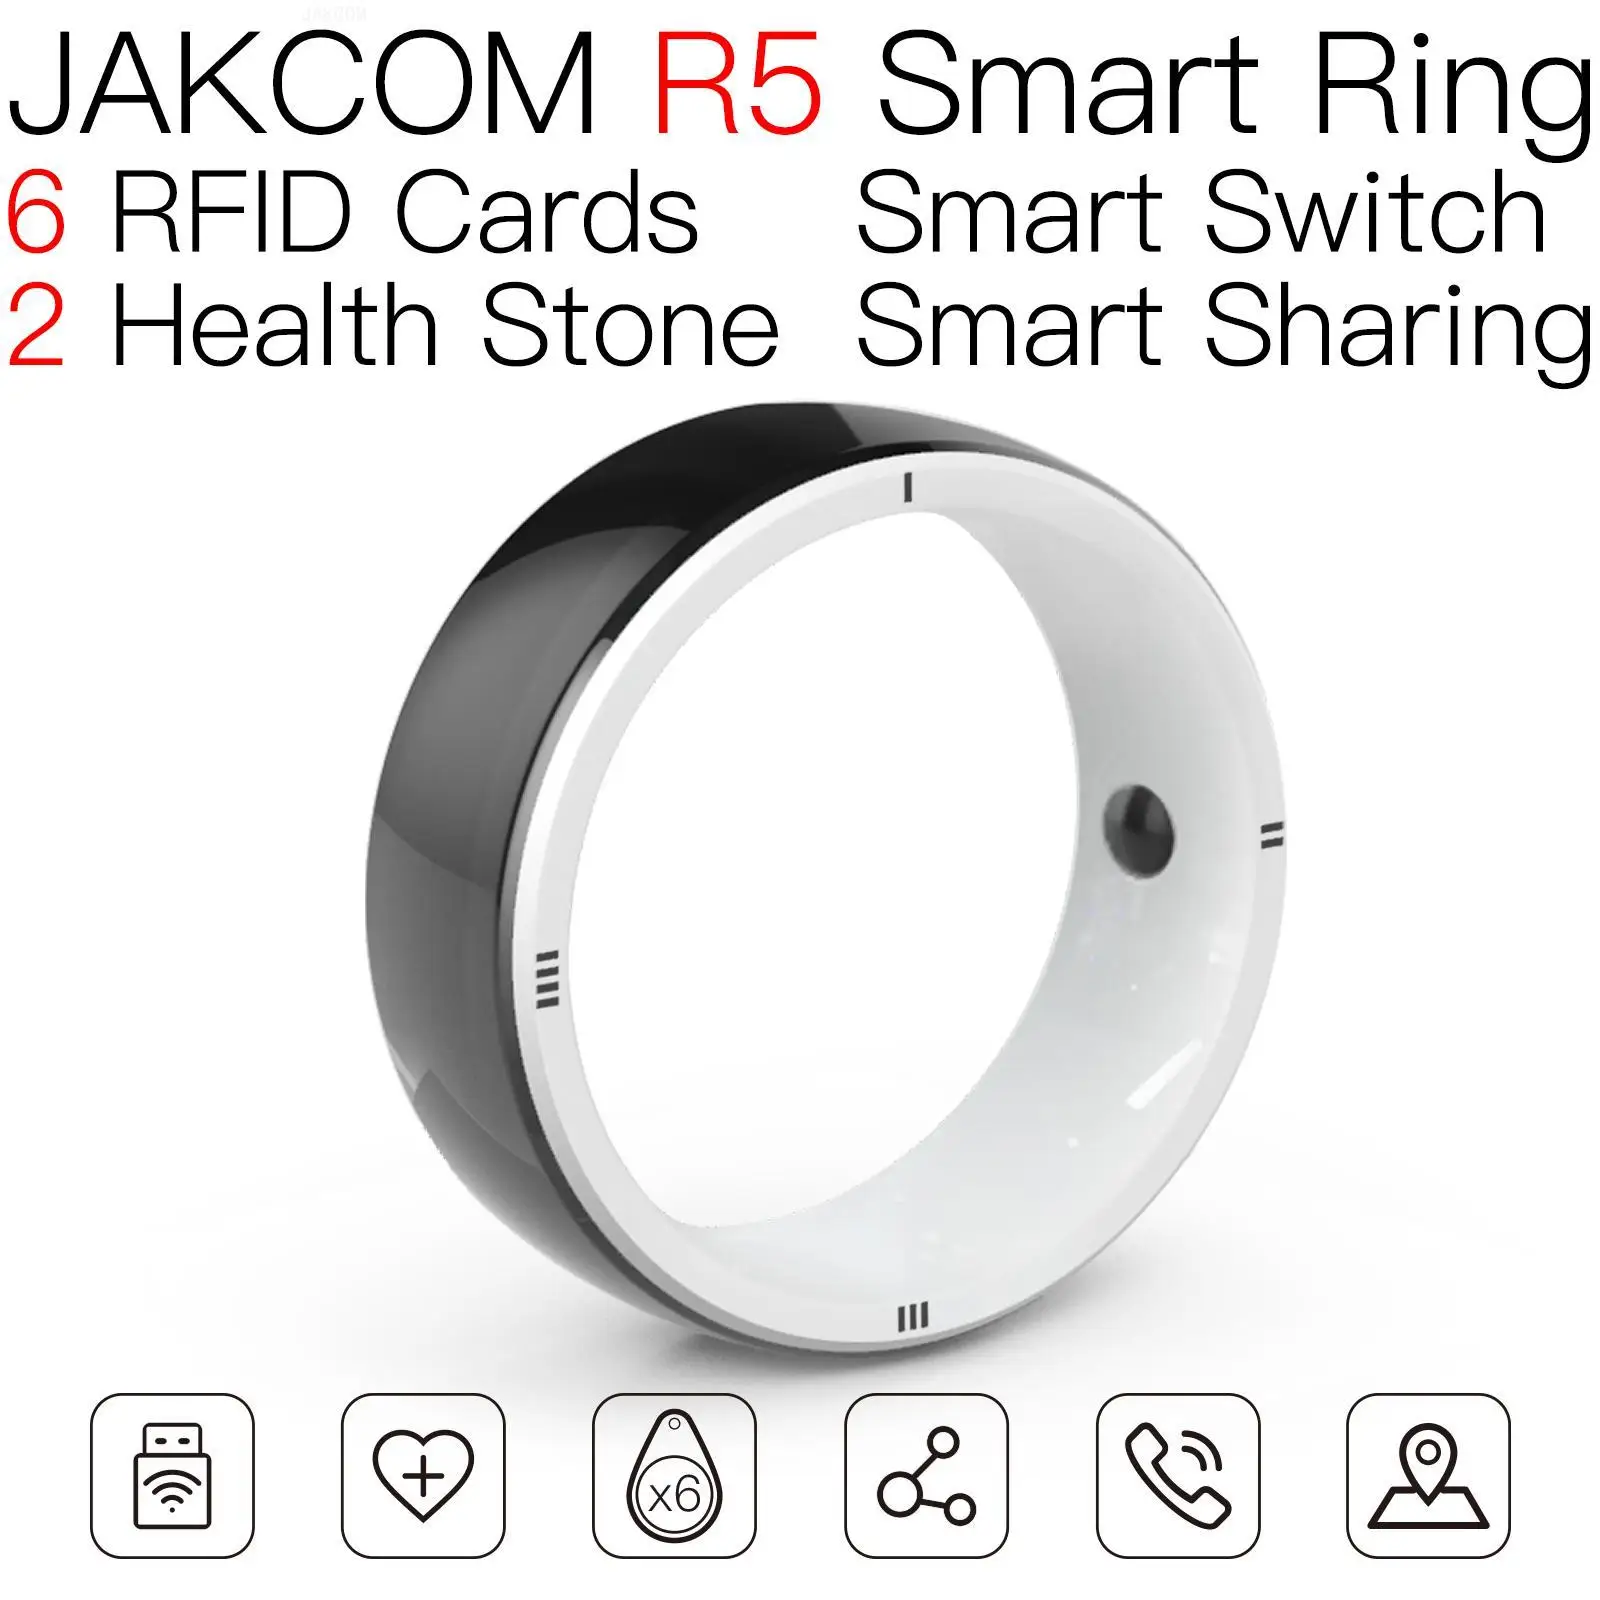 

Смарт-кольцо JAKCOM R5, новее, чем Марко, инопланетянин, стандартная мини-карта mf1 s50, печать, прозрачный бизнес-сканер, дБ, rfid, желтая бирка, uhf